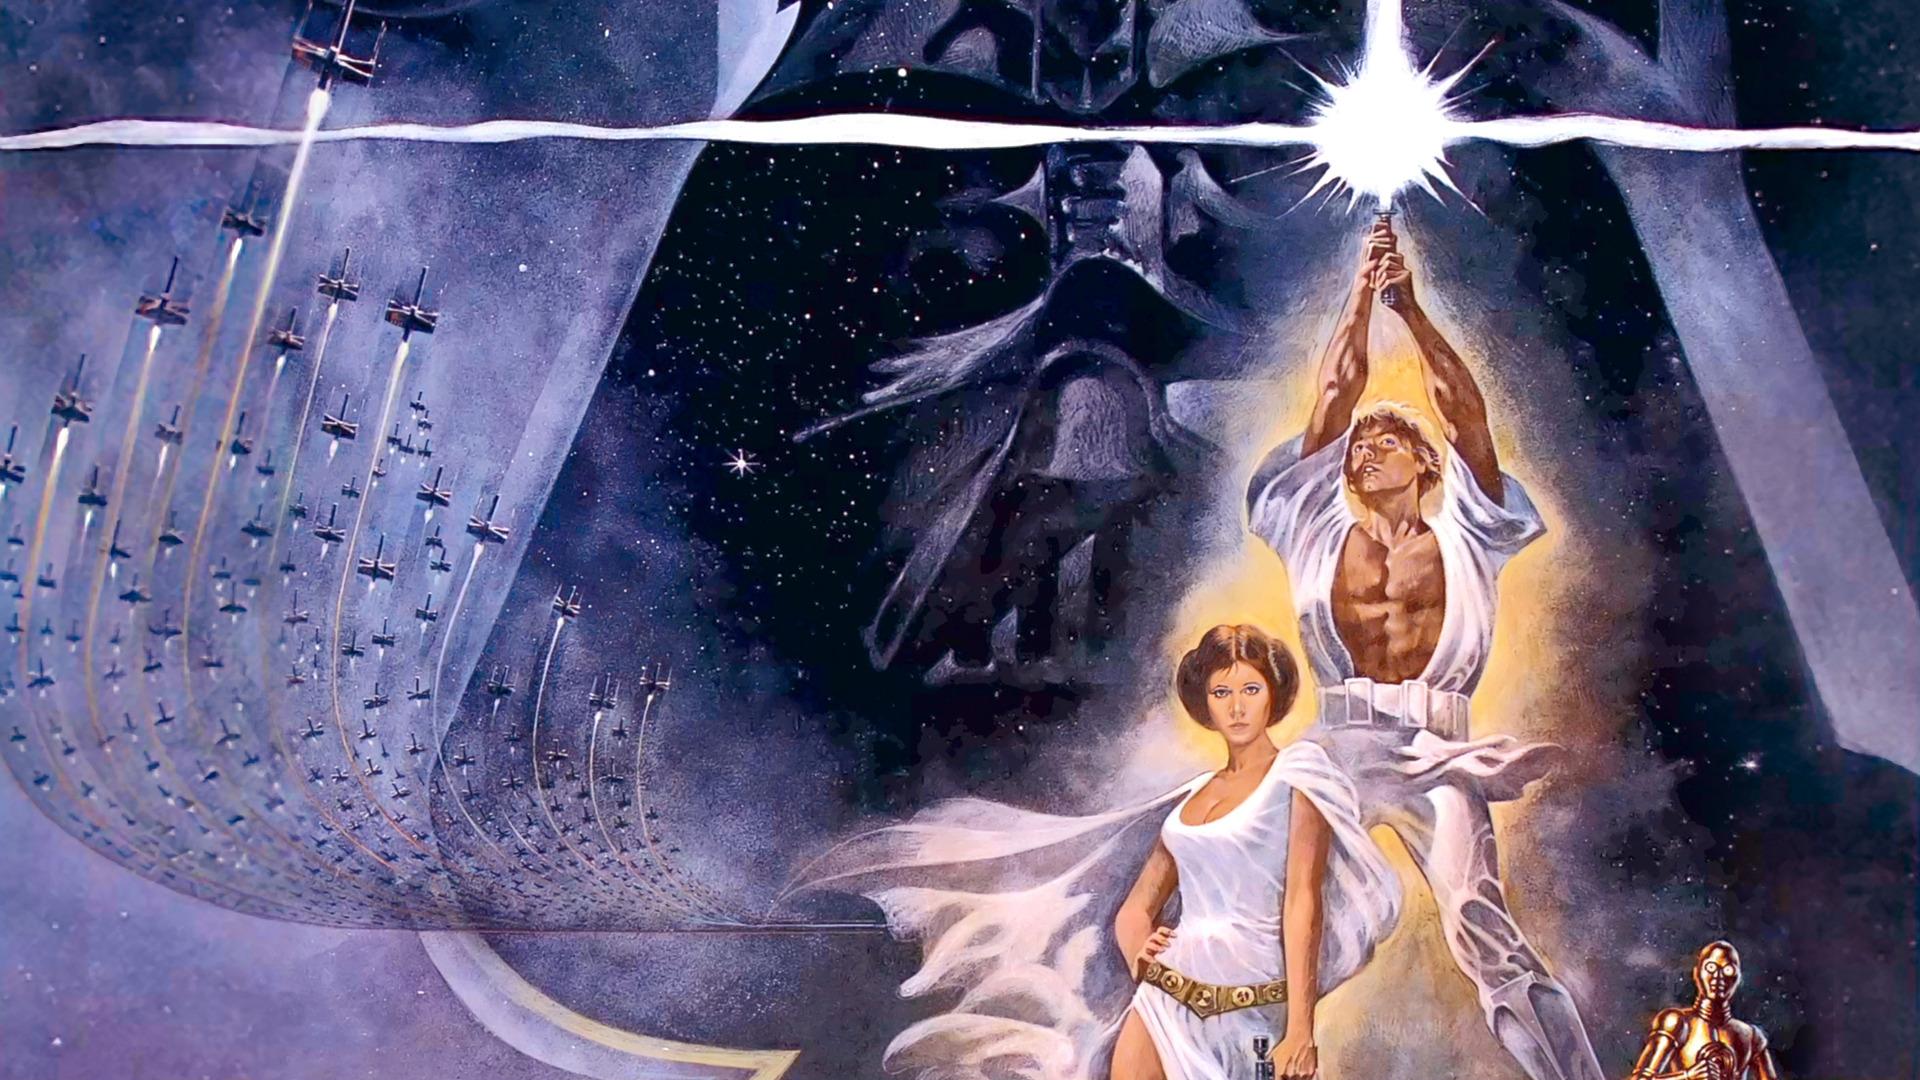 Star Wars, C3PO, Darth Vader, Luke Skywalker, Leia Organa - desktop wallpaper